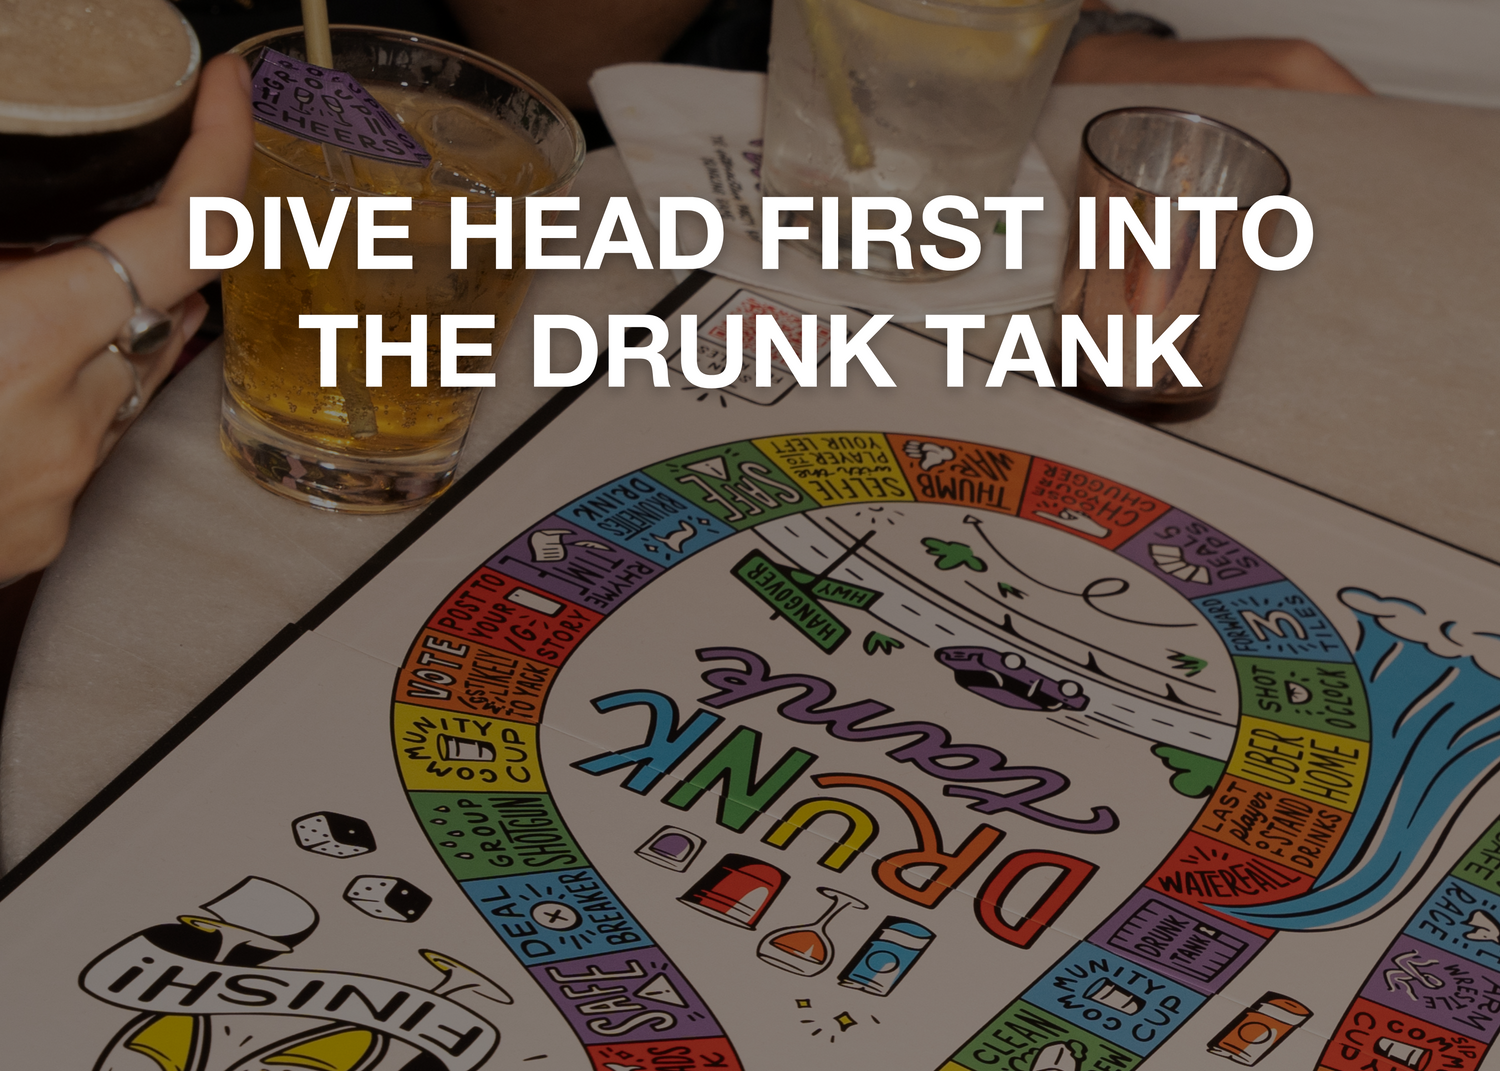 Shop Drunk Desire Games online